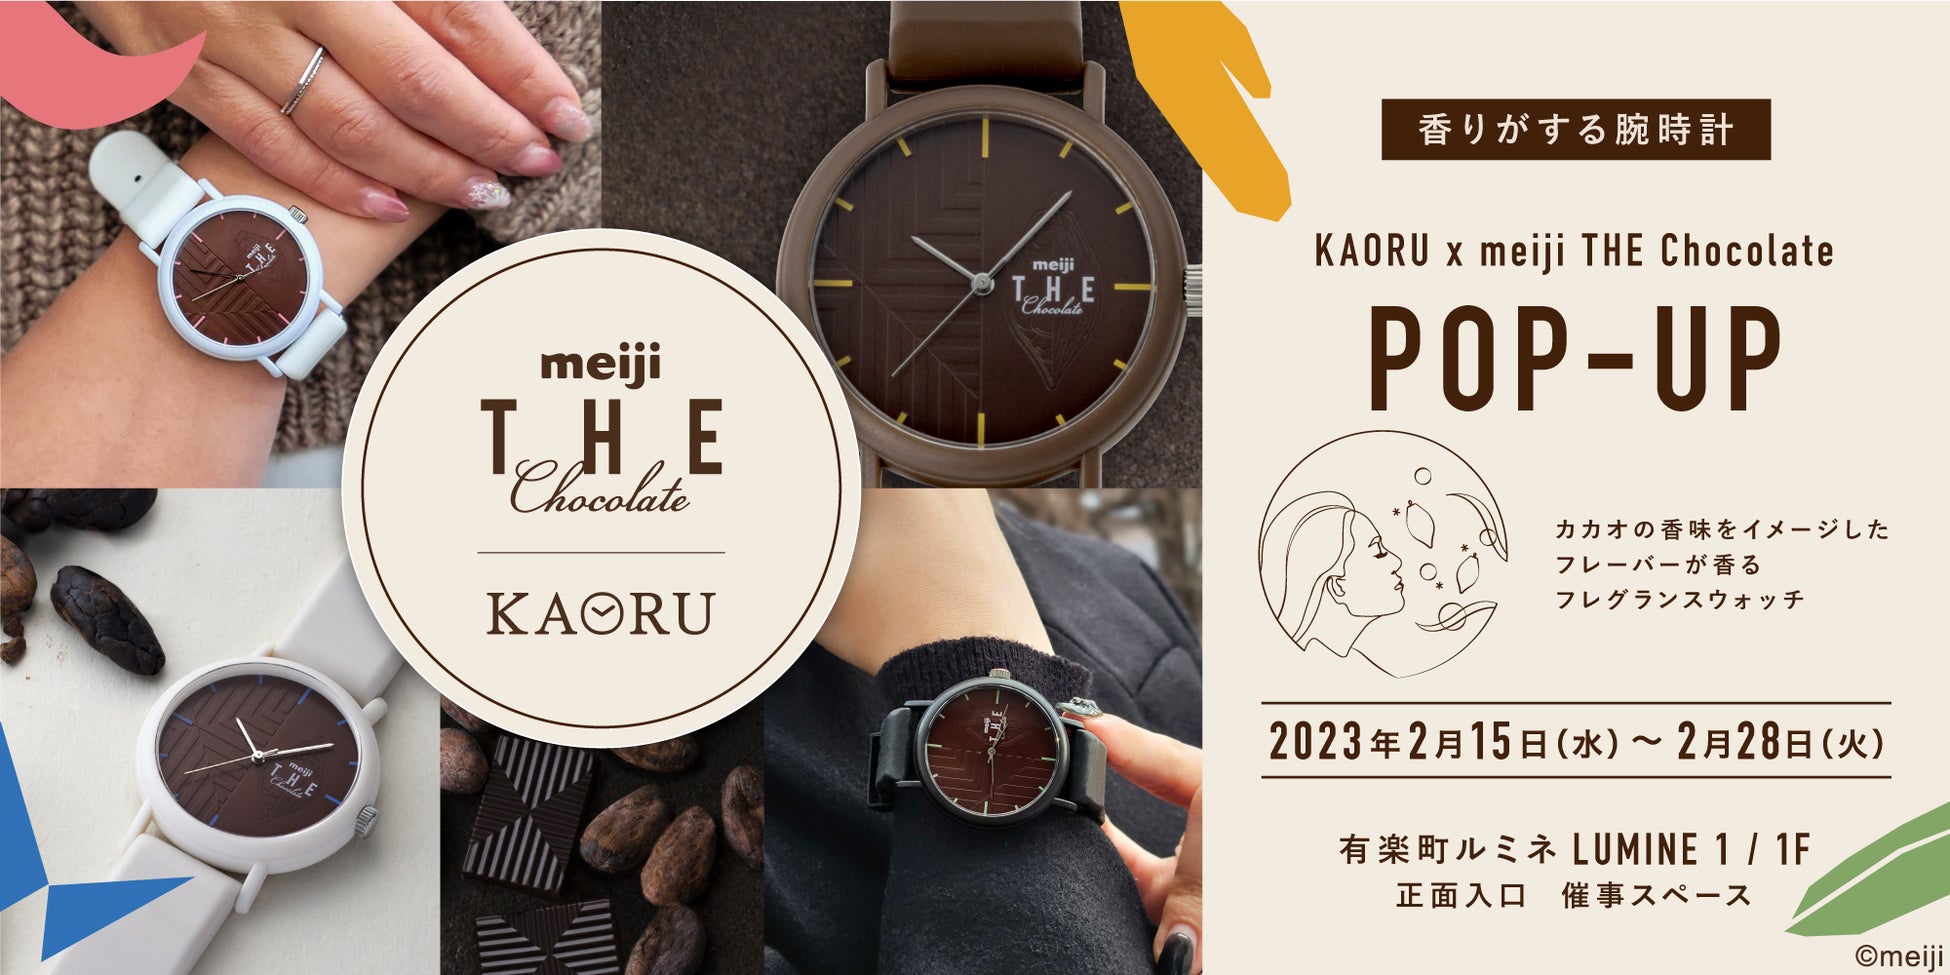 ルミネ有楽町にてPOPUPストア開催！「明治 THE Chocolate」と腕時計ブランド「KAORU」のコラボレーションウォッチ